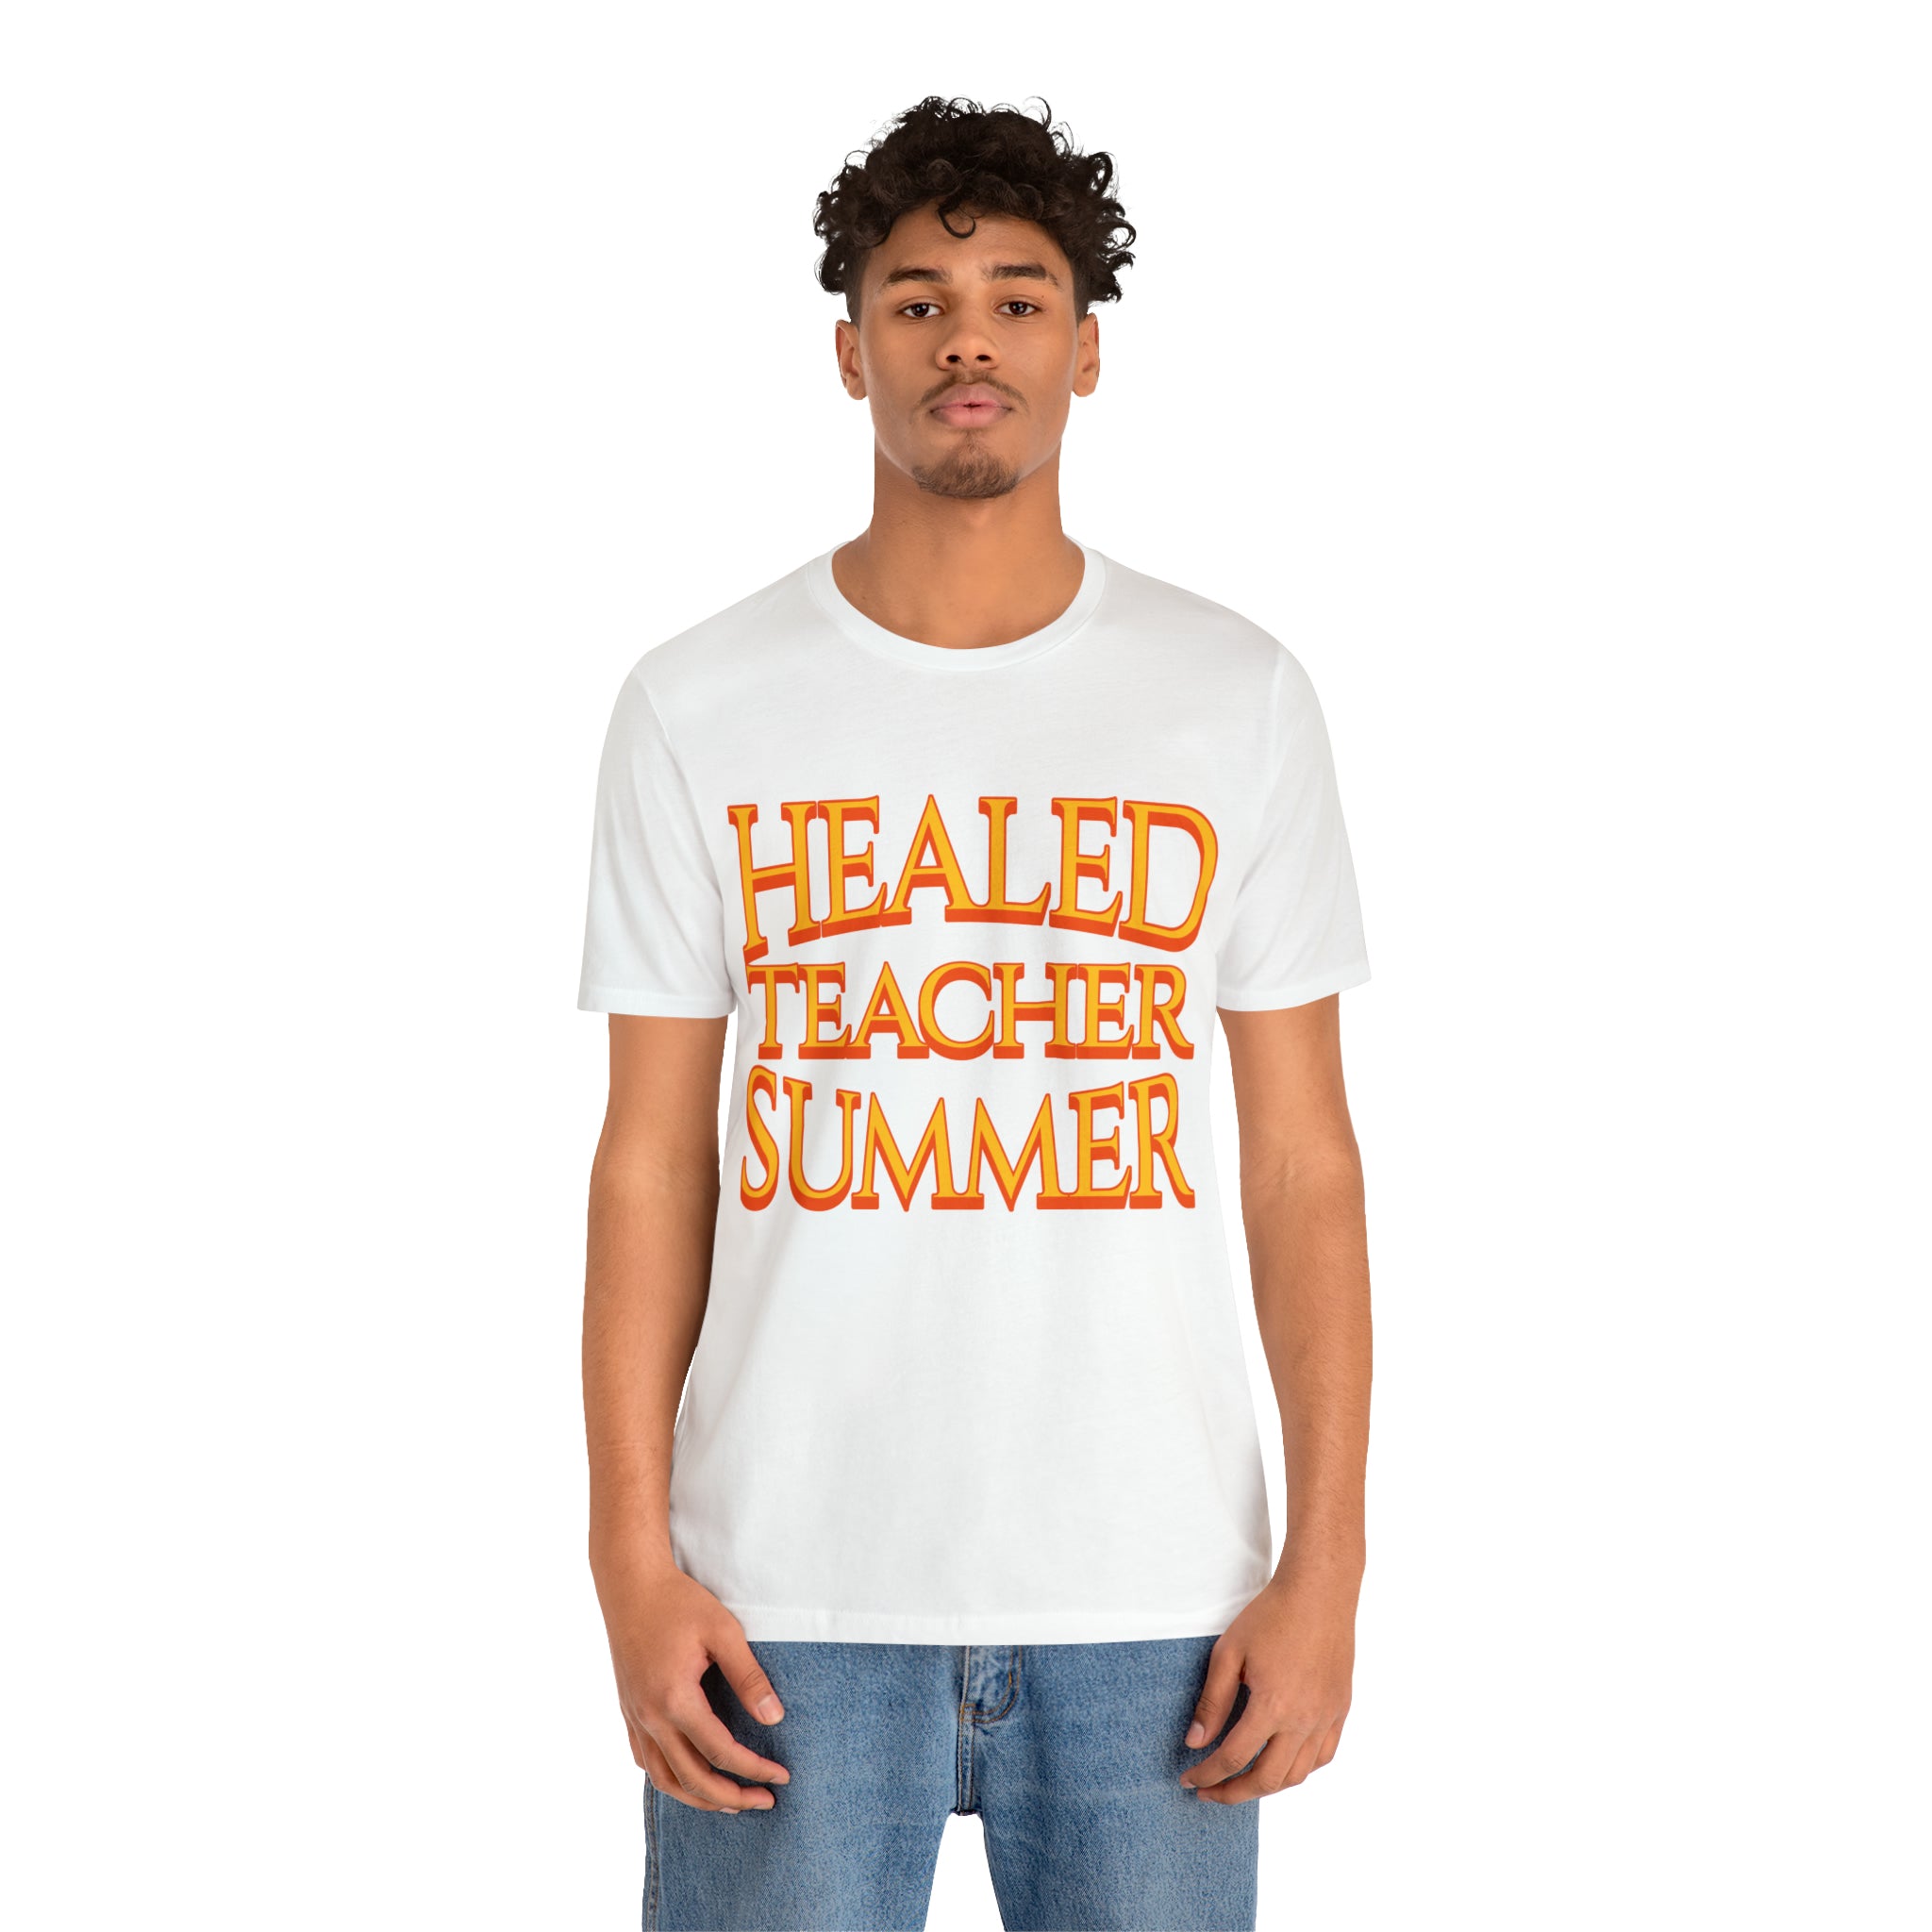 Healed Teacher Summer